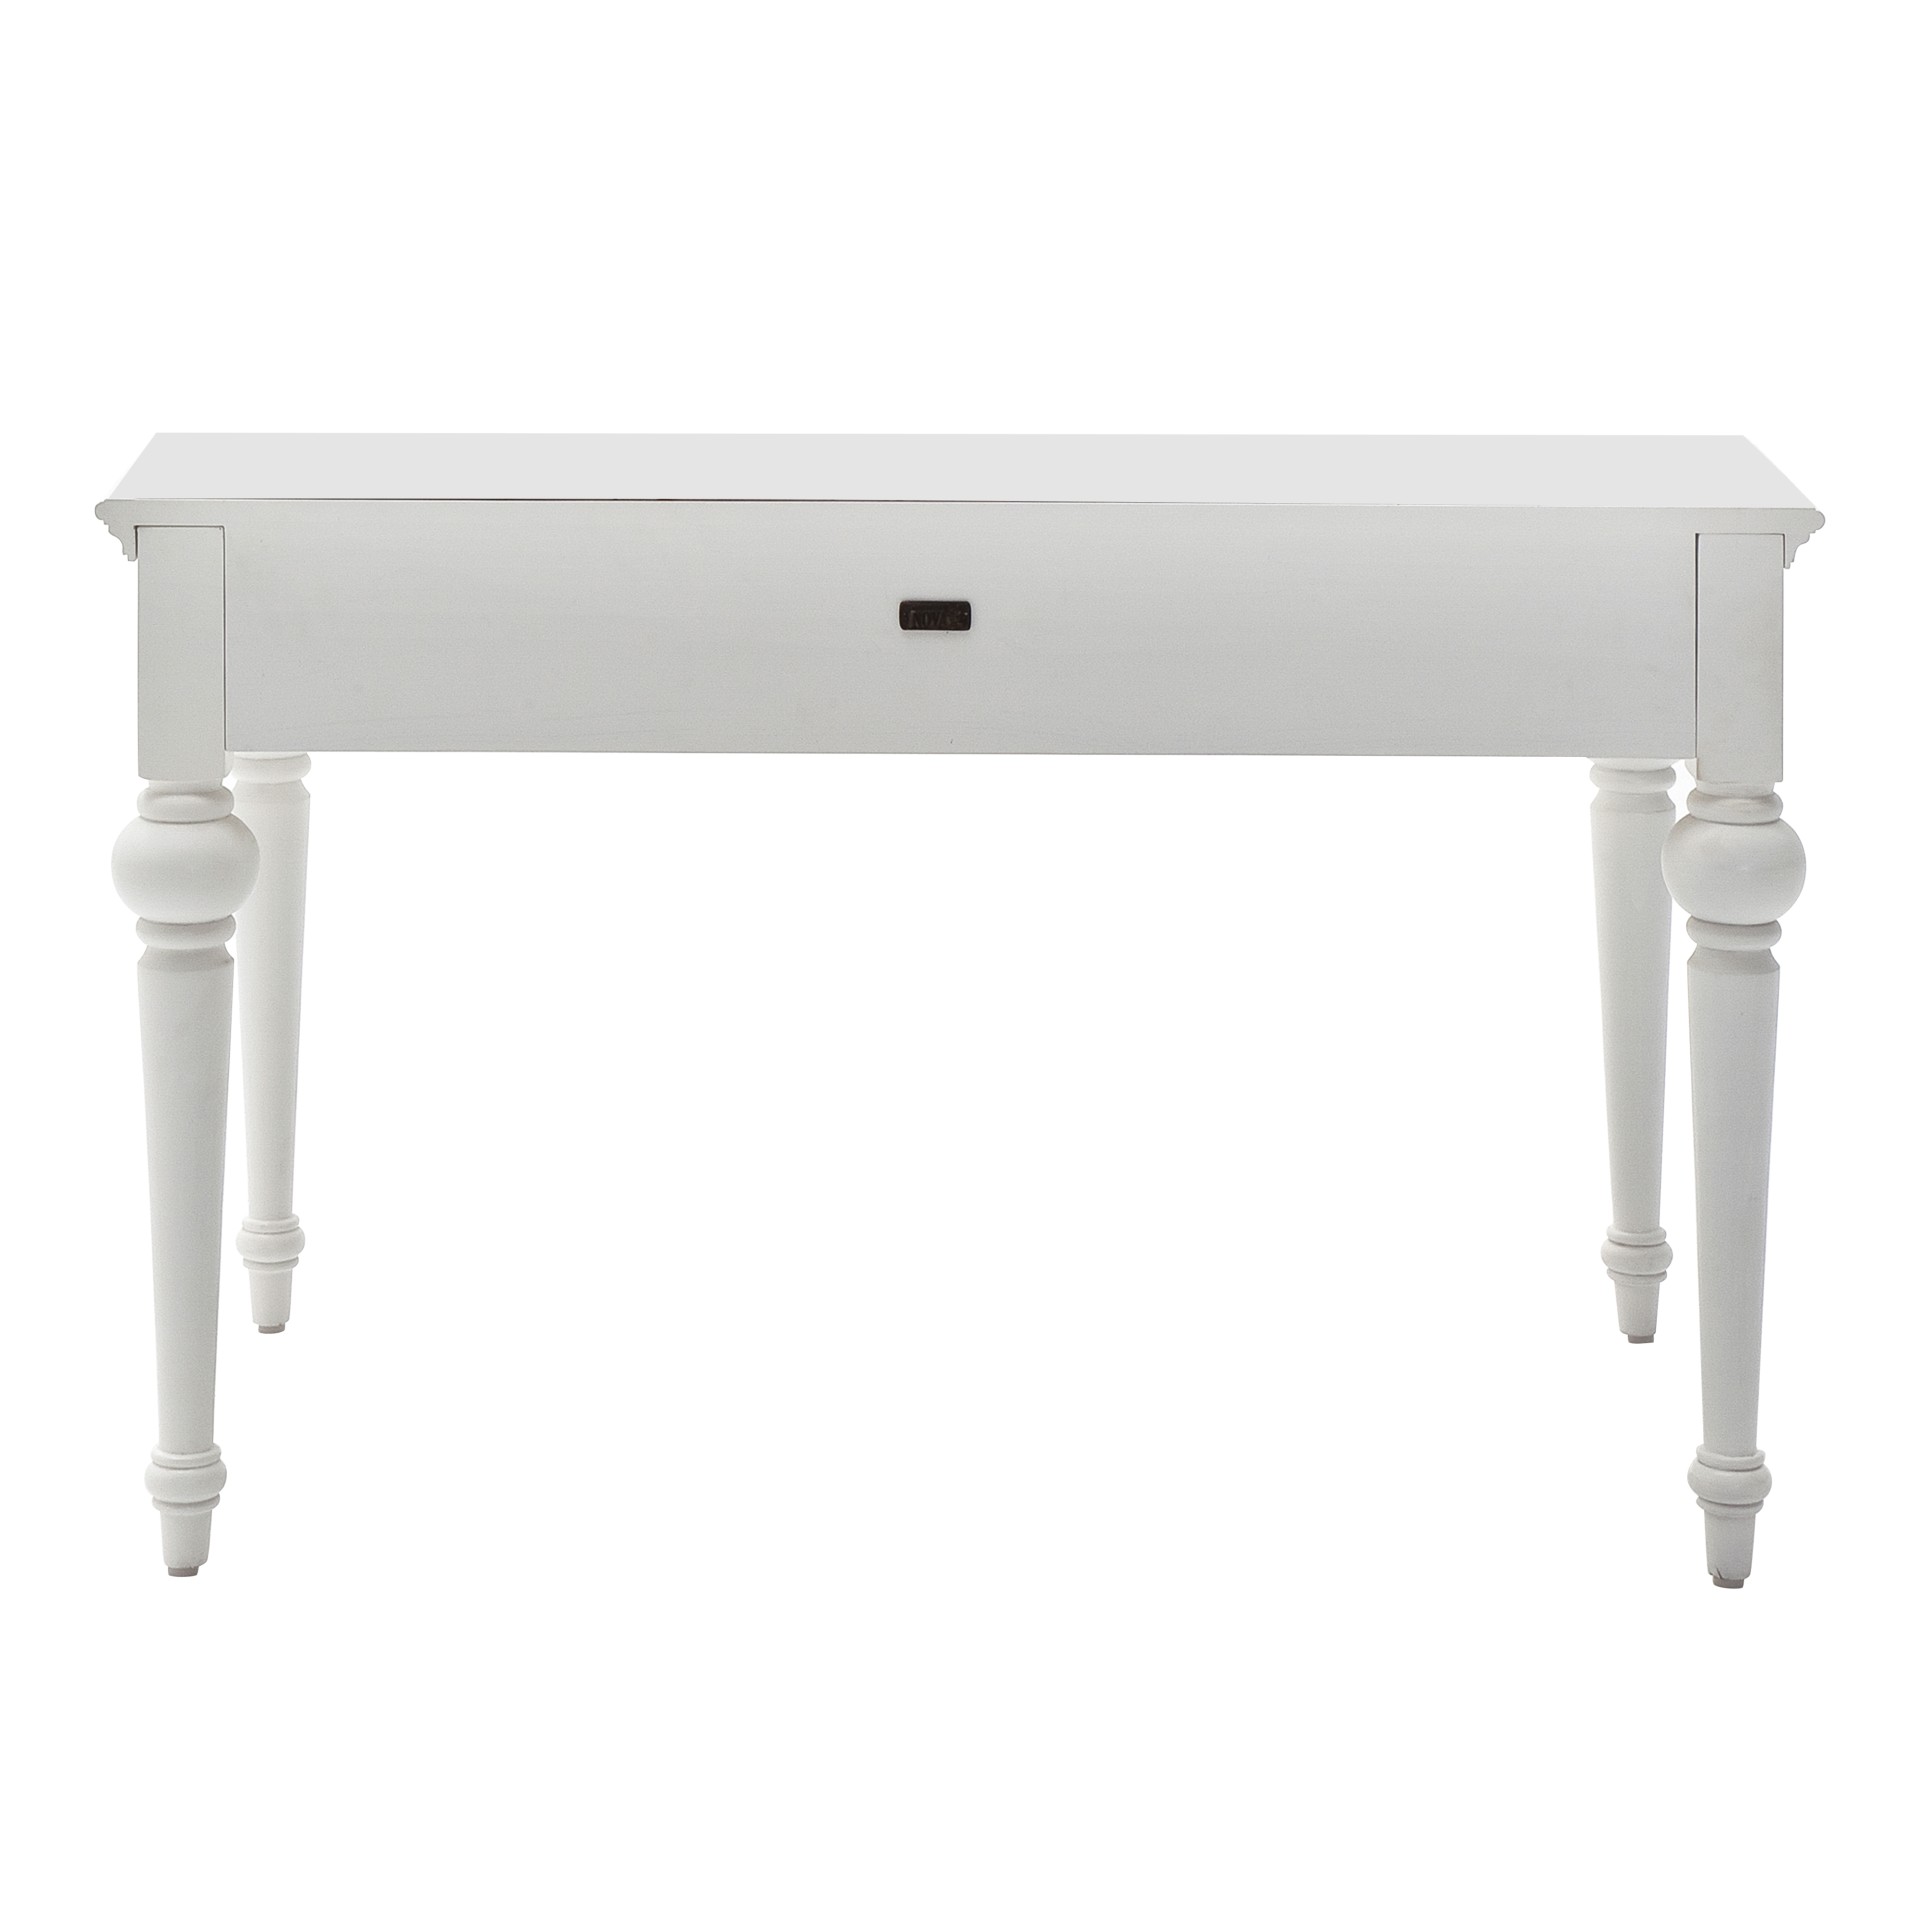 Der Schreibtisch Provence überzeugt mit seinem Landhaus Stil. Gefertigt wurde er aus Mahagoni Holz, welches einen weißen Farbton besitzt. Der Schreibtisch verfügt über zwei Schubladen. Die Breite beträgt 120 cm.